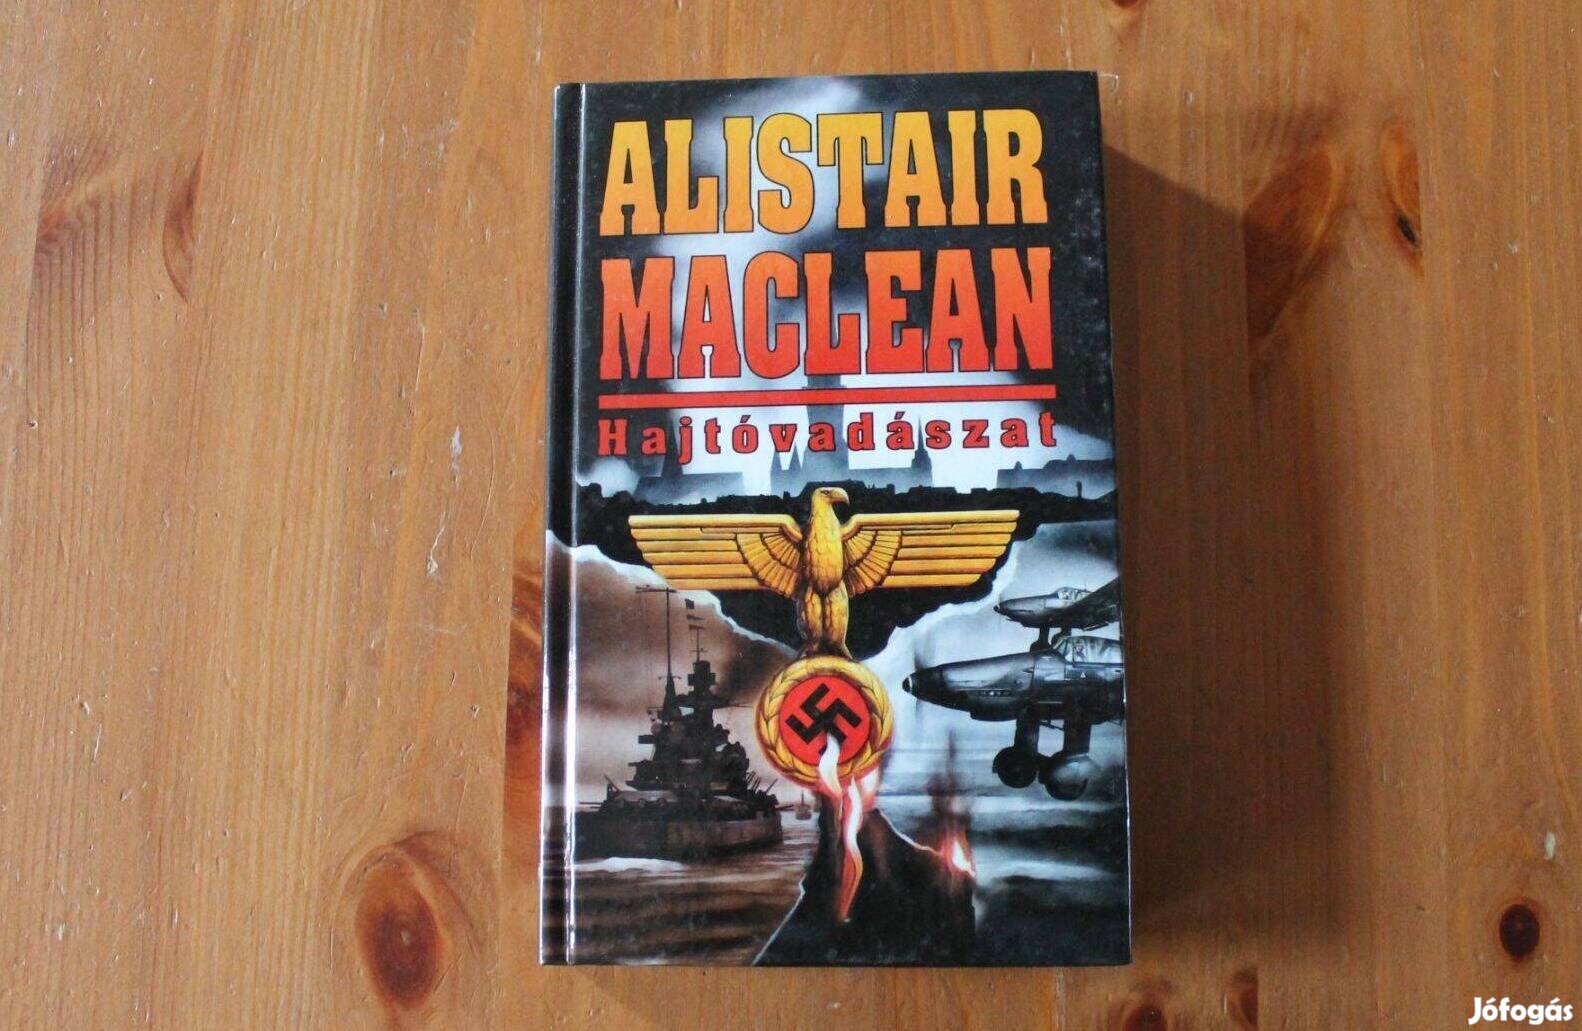 Alistair Maclean - Hajtóvadászat